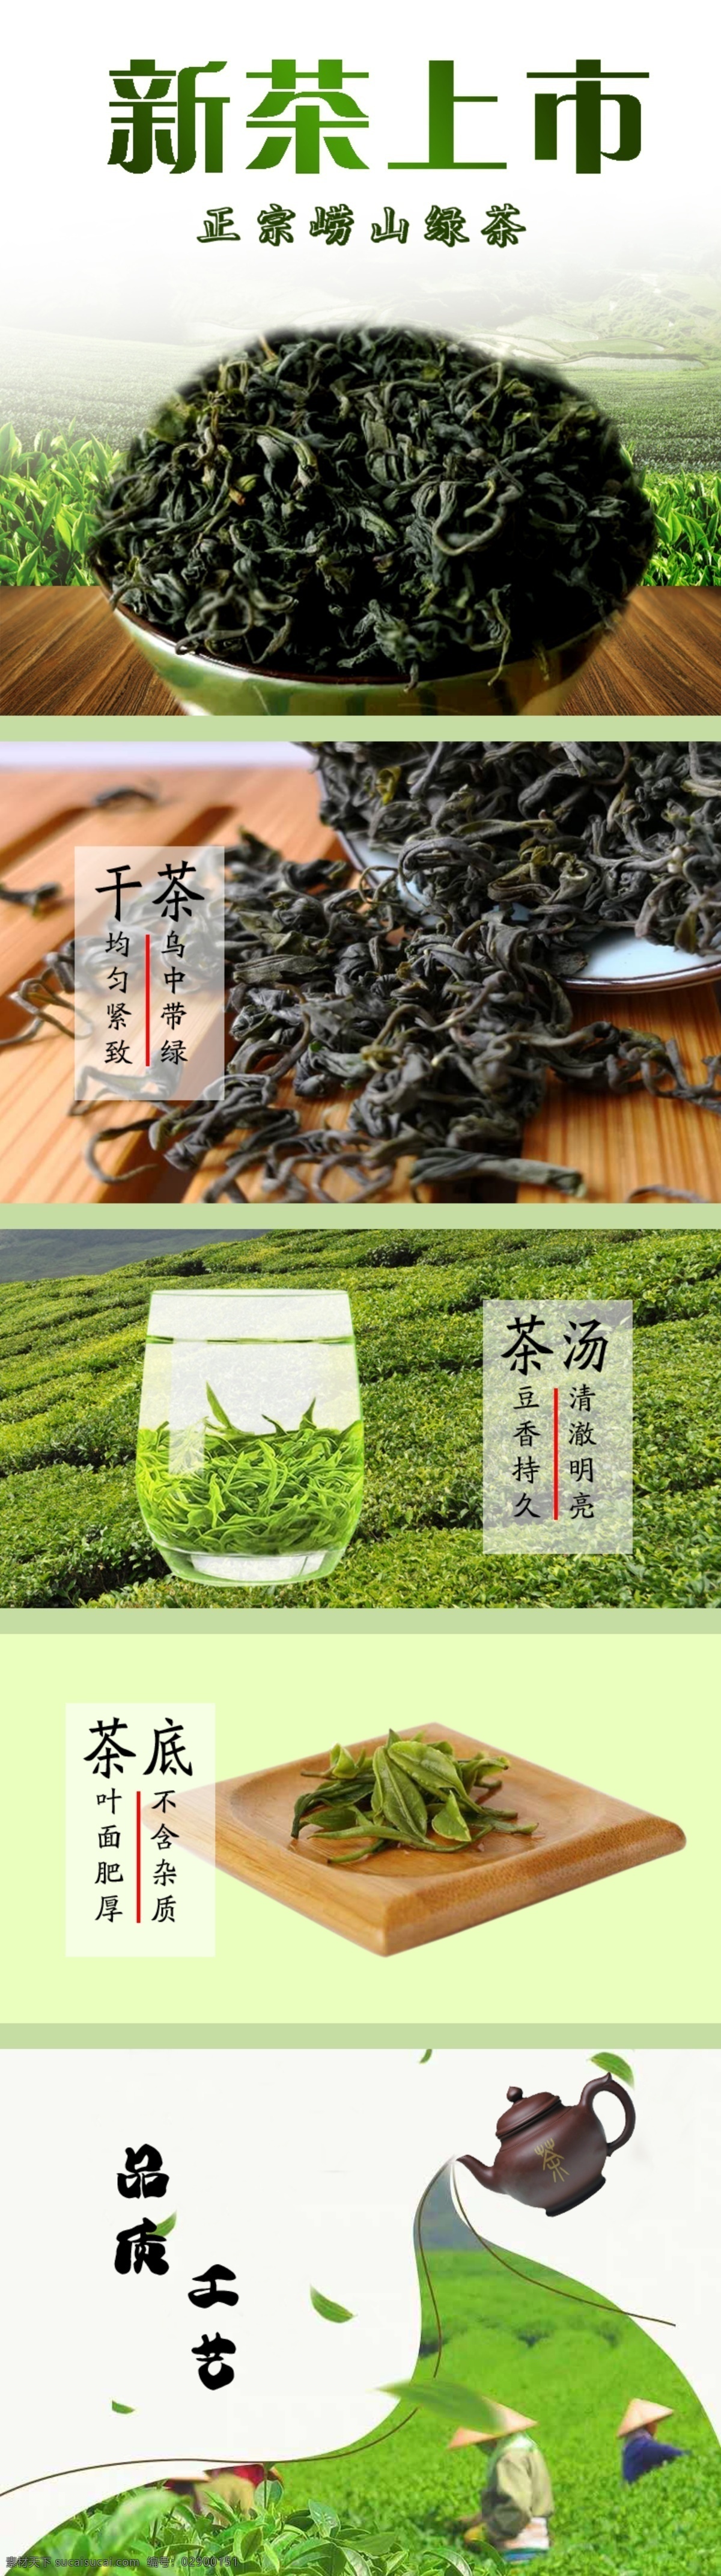 新茶上市 绿茶 崂山绿茶 淘宝详情页 茶叶 分层